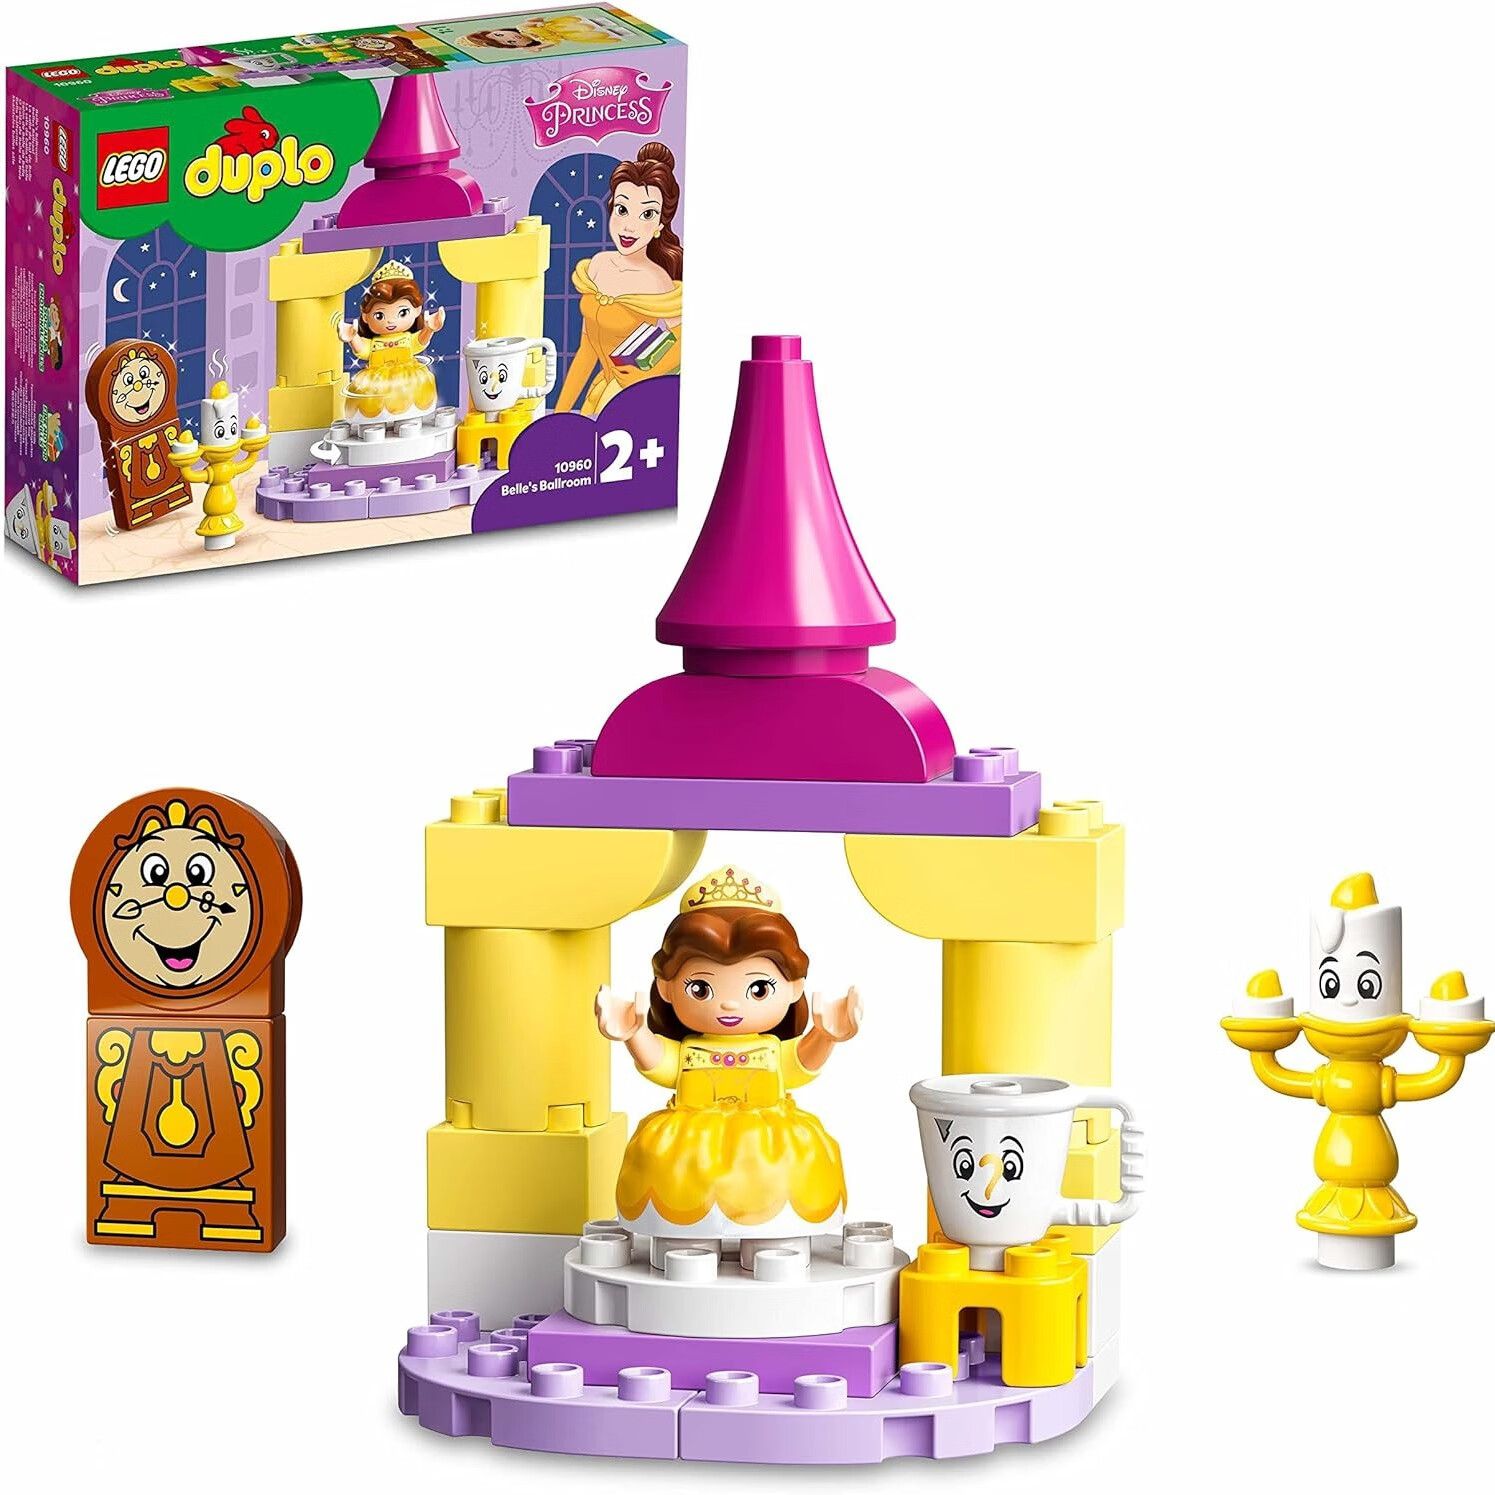 LEGO 乐高 积木玩具 得宝大颗粒系列 10960 迪士尼公主贝儿的舞厅 2岁+ 礼物 148